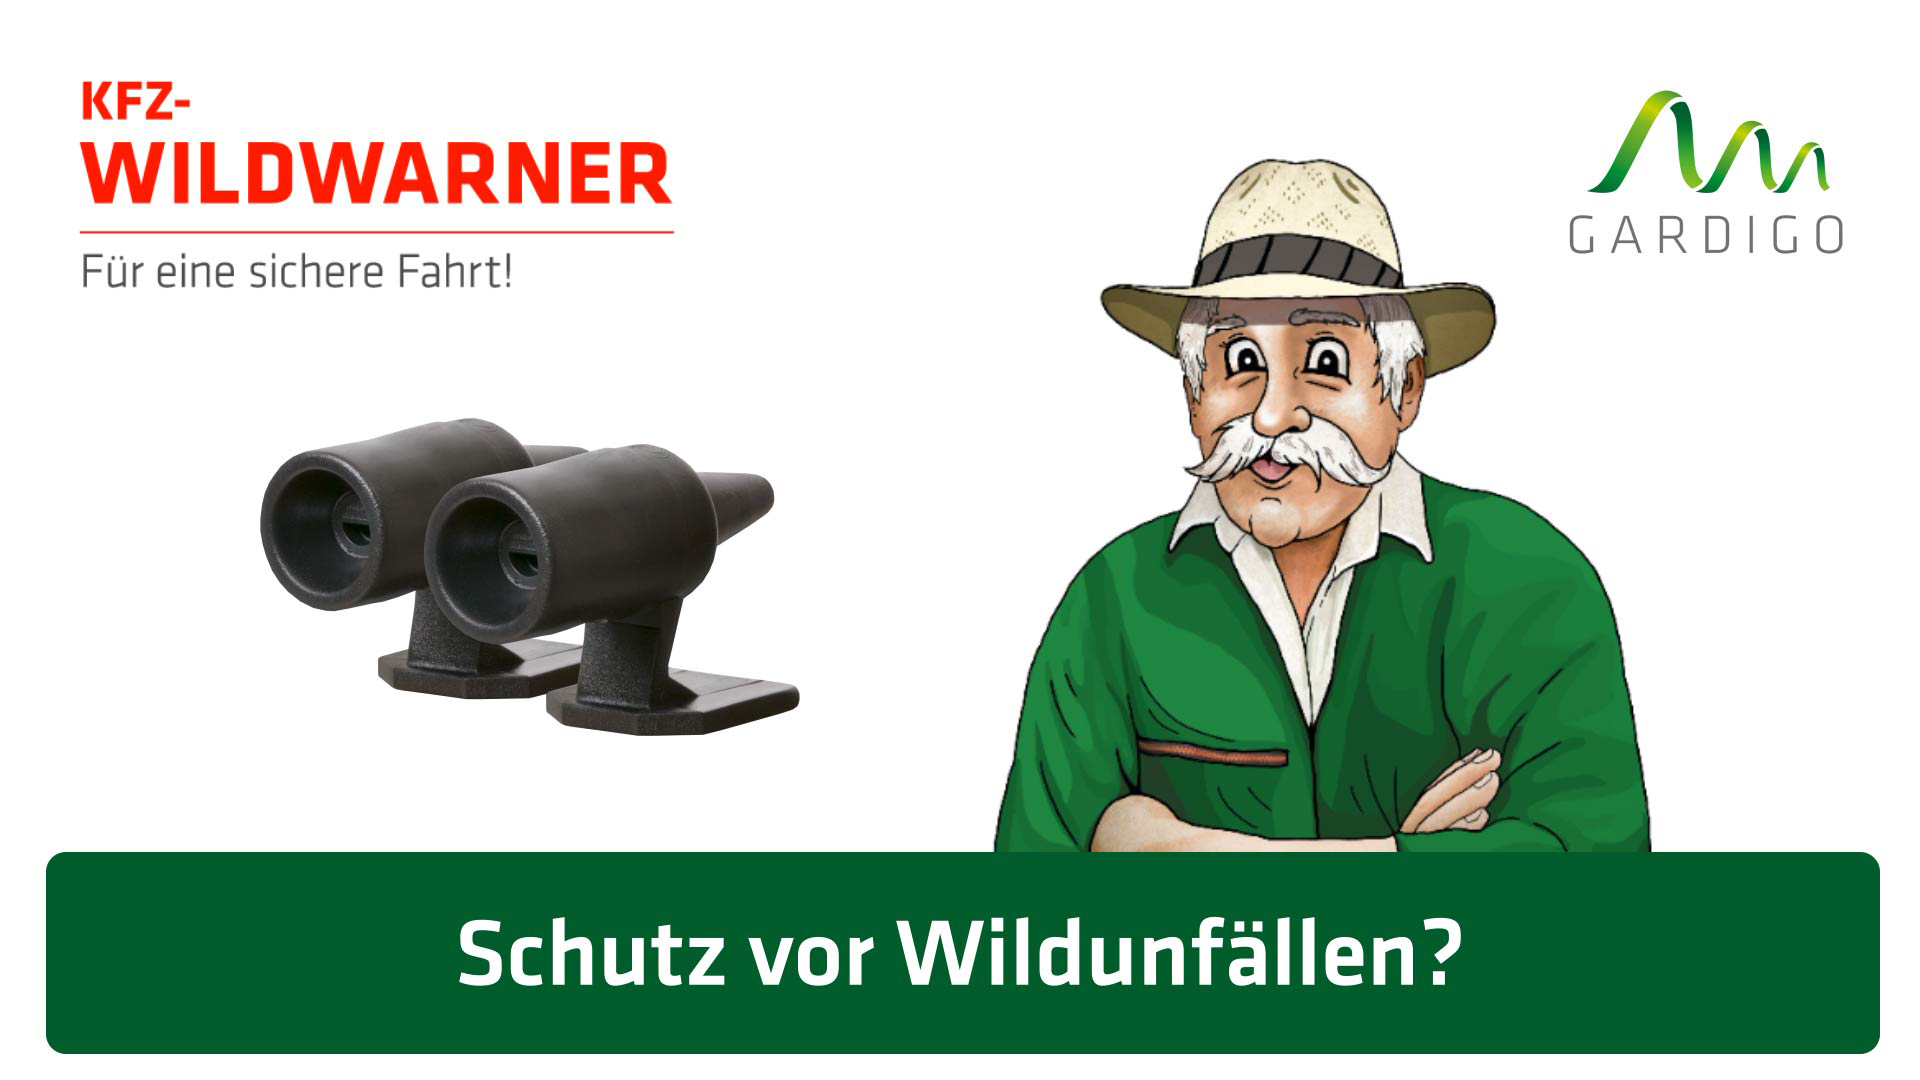 2Pc Hirsch Pfeifen Wildtiere Warn Geräte Tier Alarm Auto